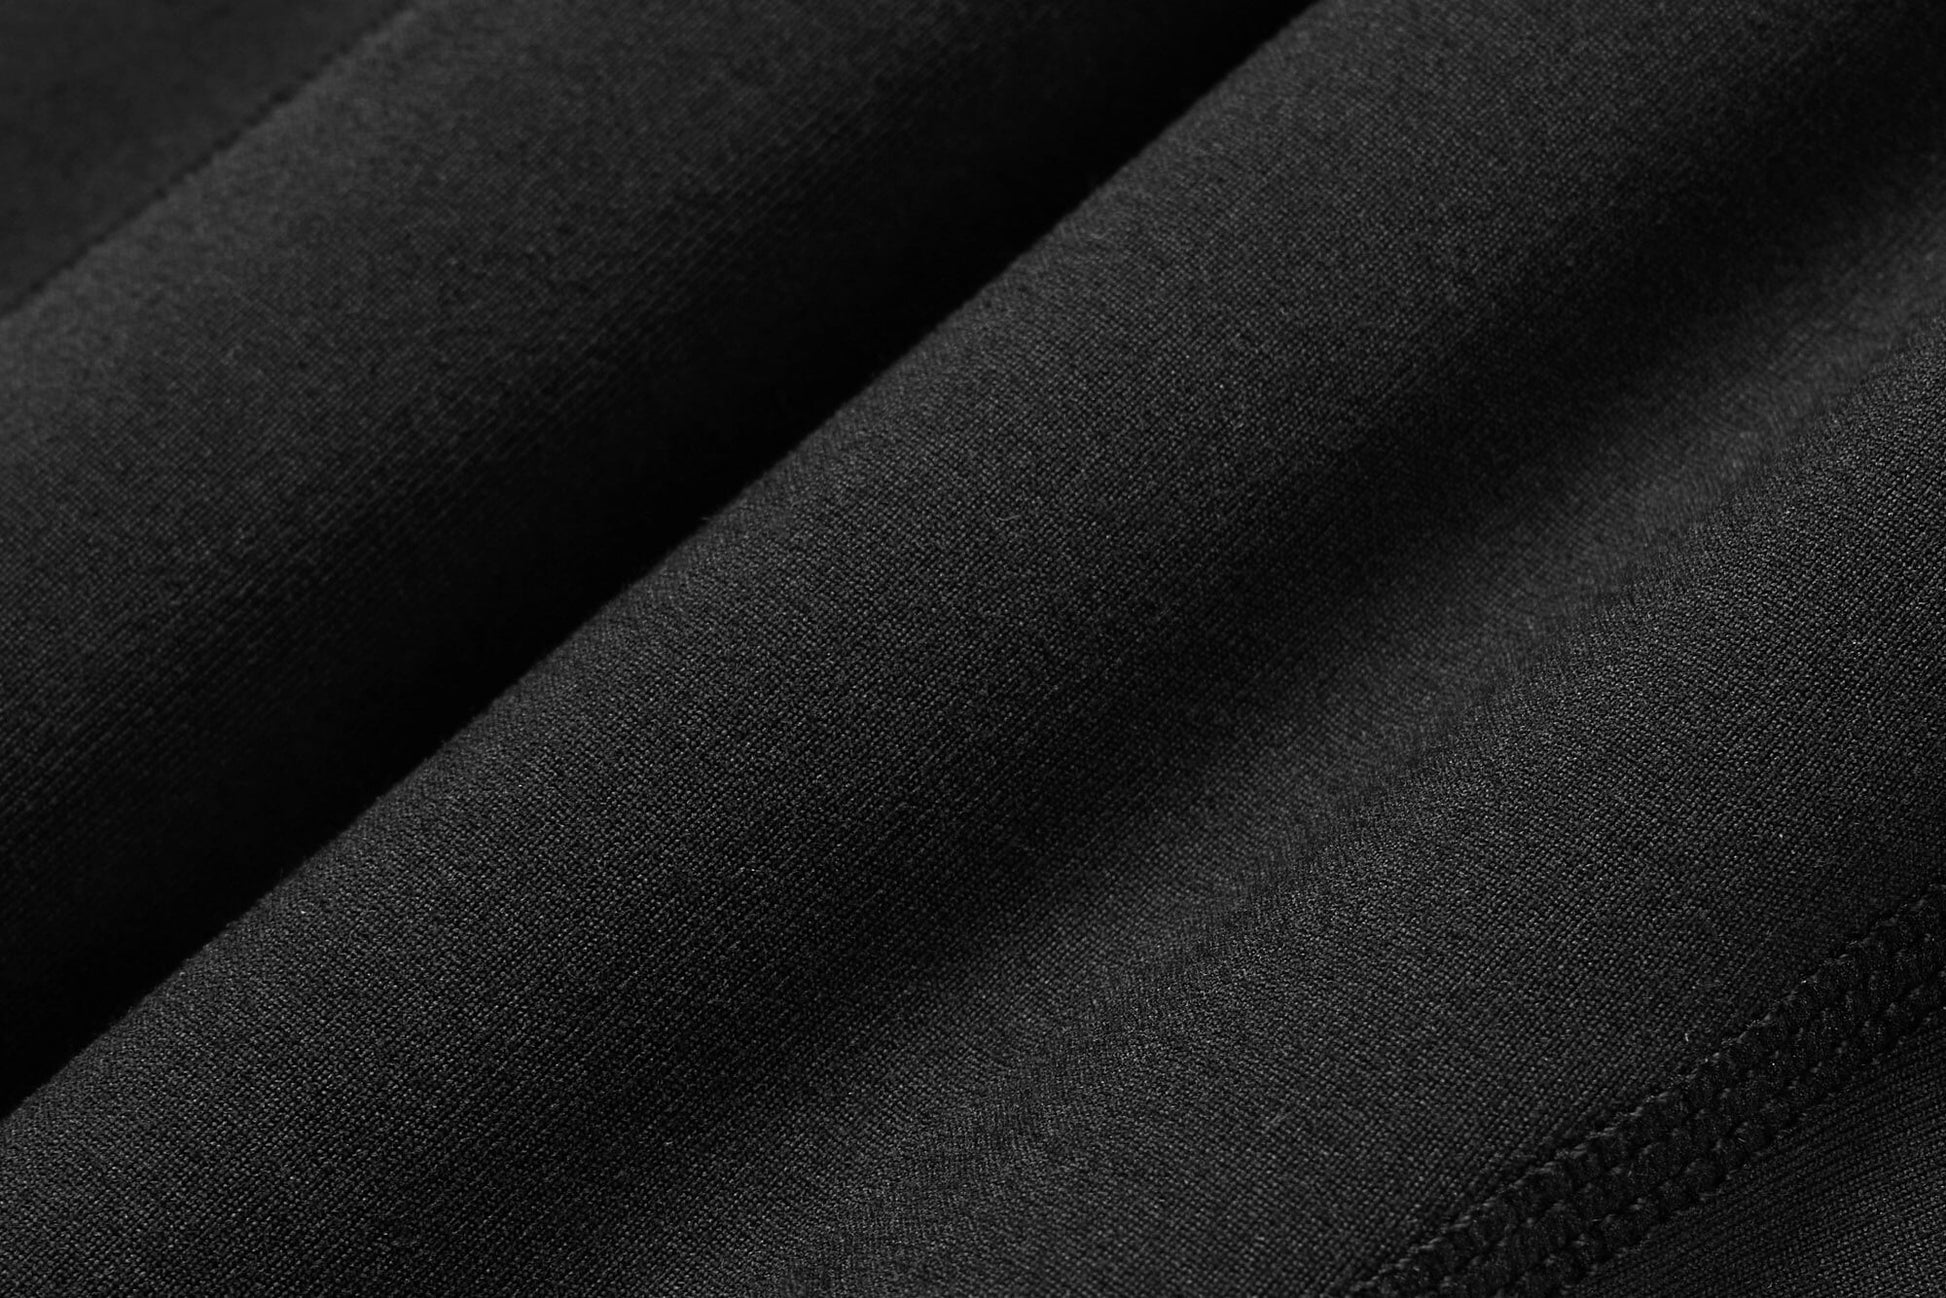 close up of leggings fabric